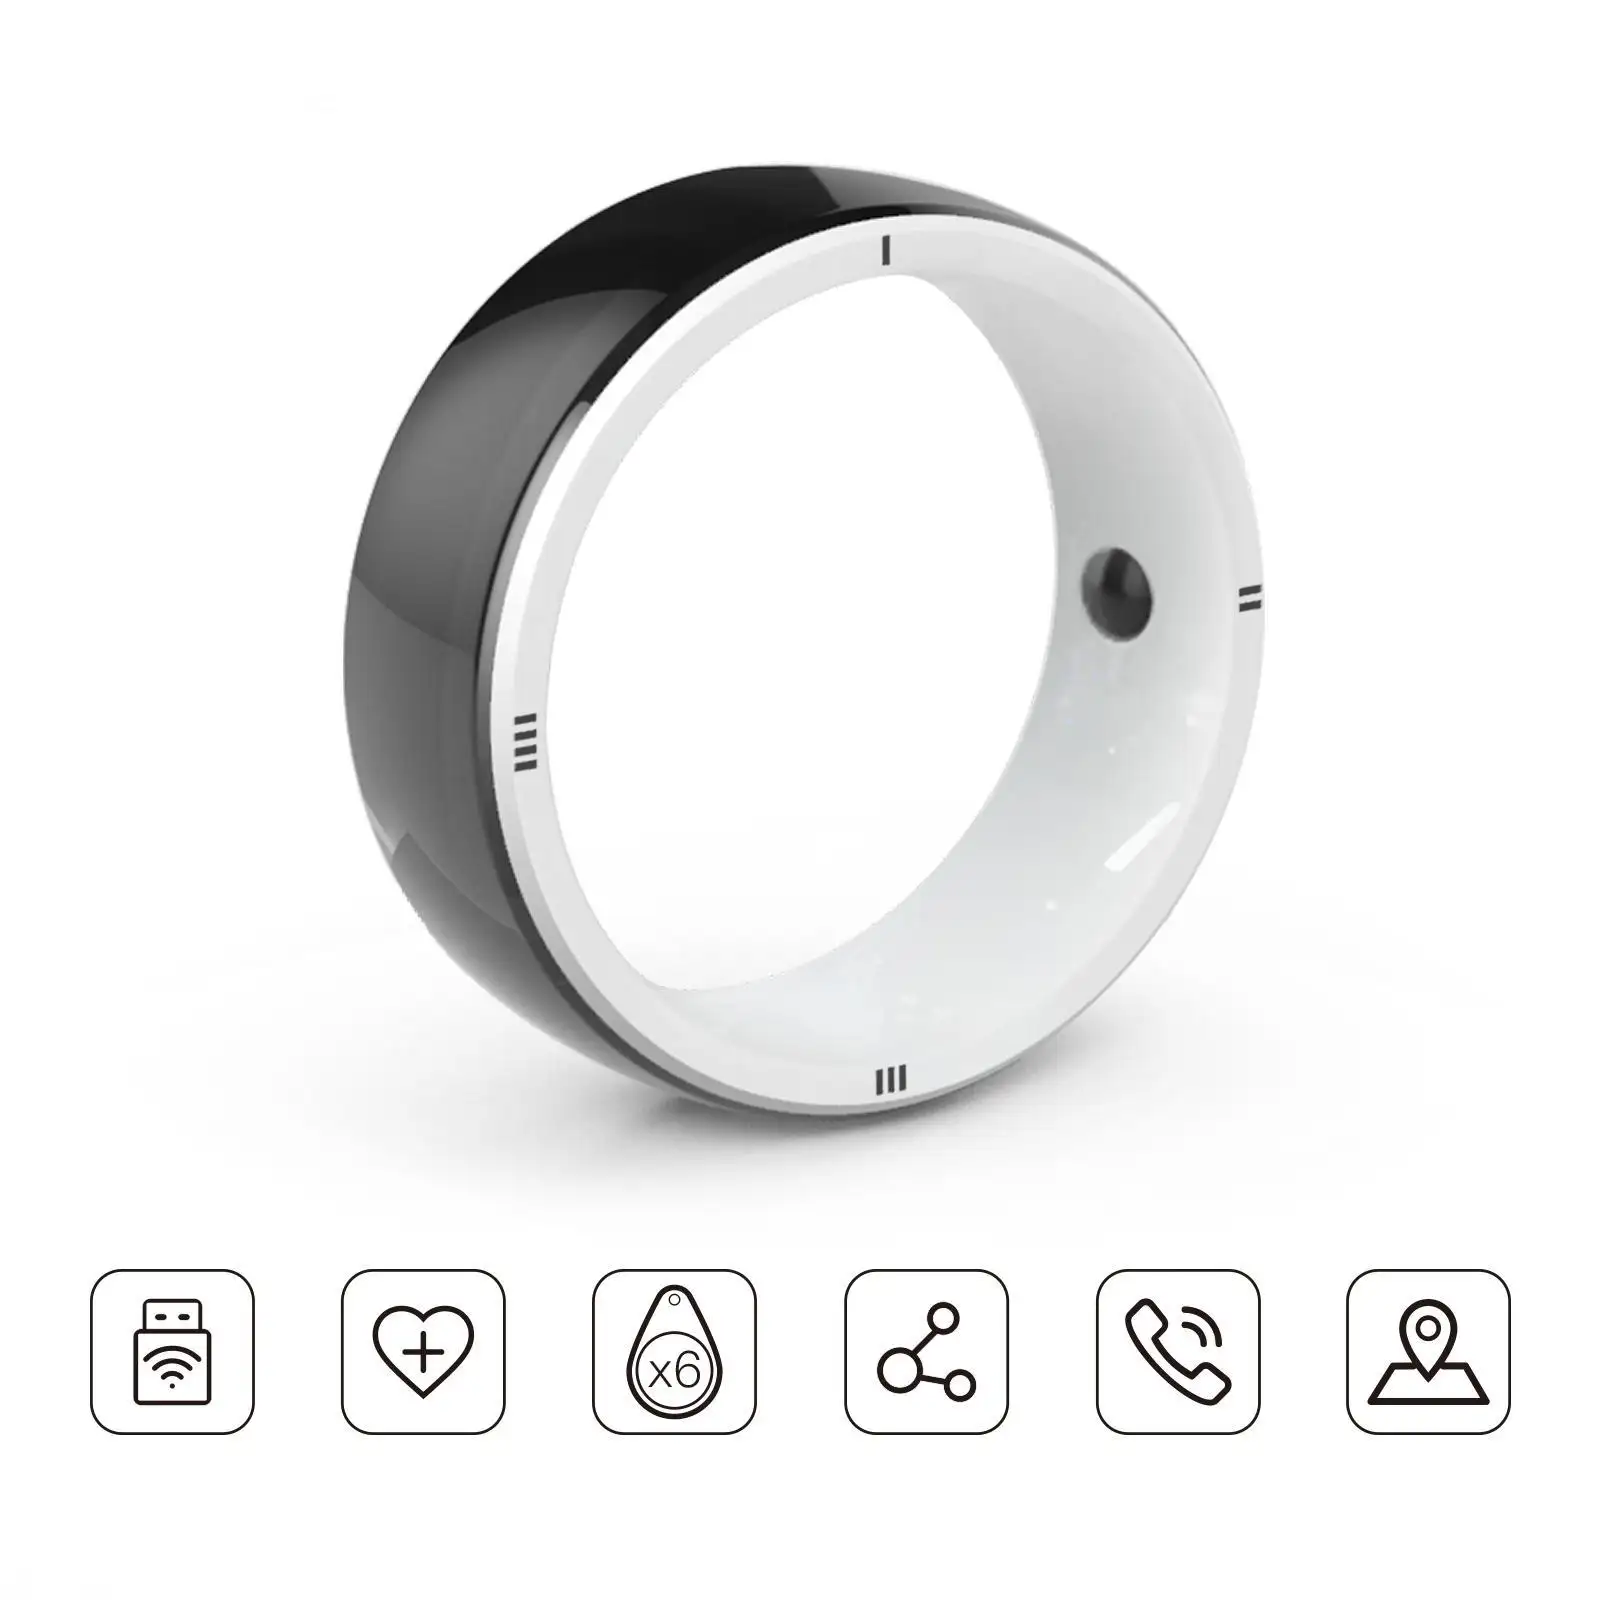 JAKCOM R5 สมาร์ทแหวนสมาร์ทแหวนใหม่Match To Revvl 2 กรณีที่ดีที่สุดราคาไม่แพงหูฟังไร้สายBjเครื่องขยายเสียง 1 ฟุต